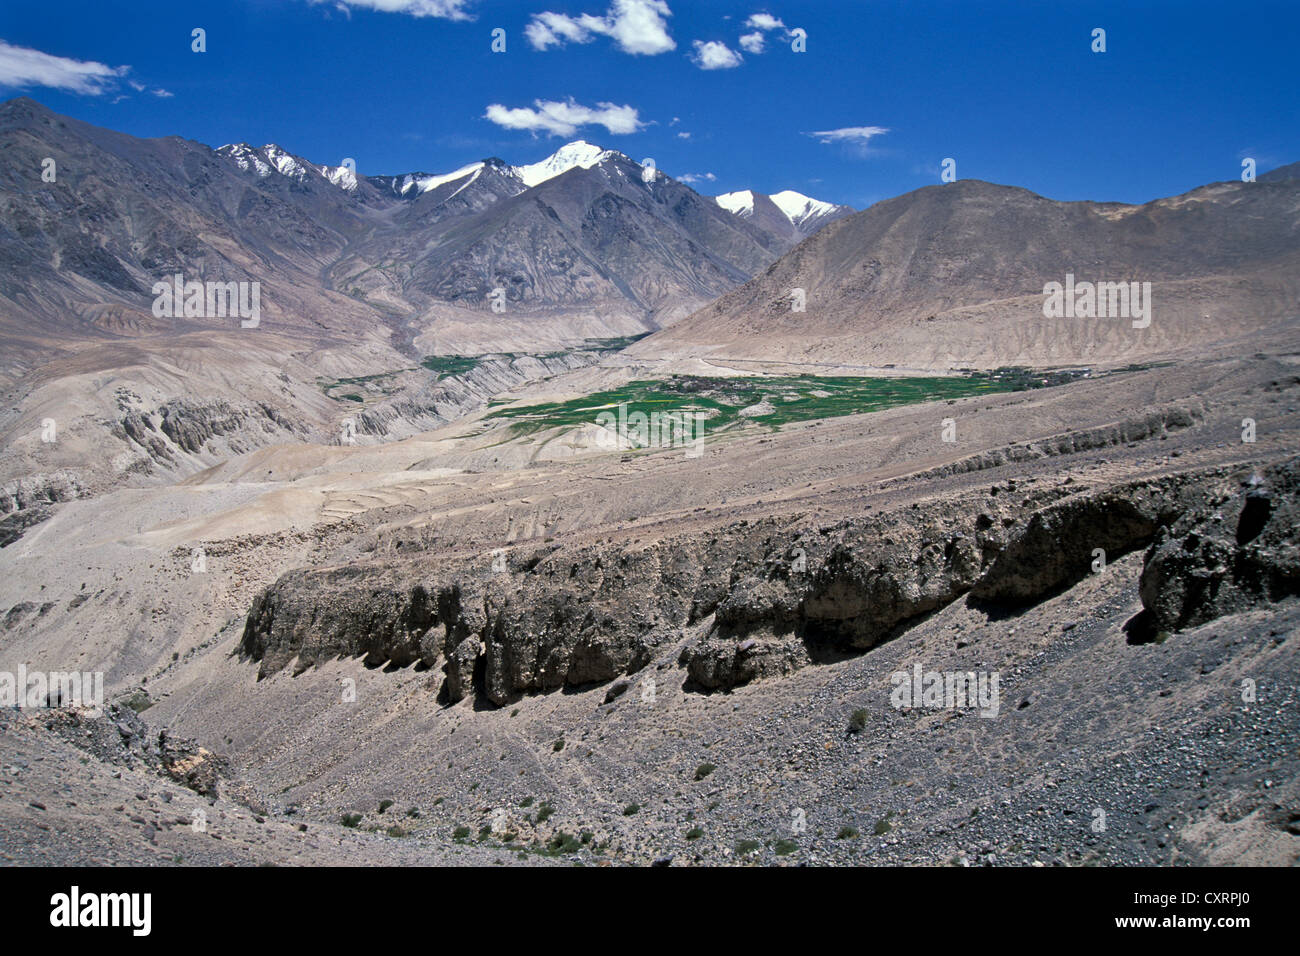 Champs, des pics de montagne, la Vallée de Nubra, Ladakh, Himalaya indien, le Jammu-et-Cachemire, l'Inde du Nord, Inde, Asie Banque D'Images